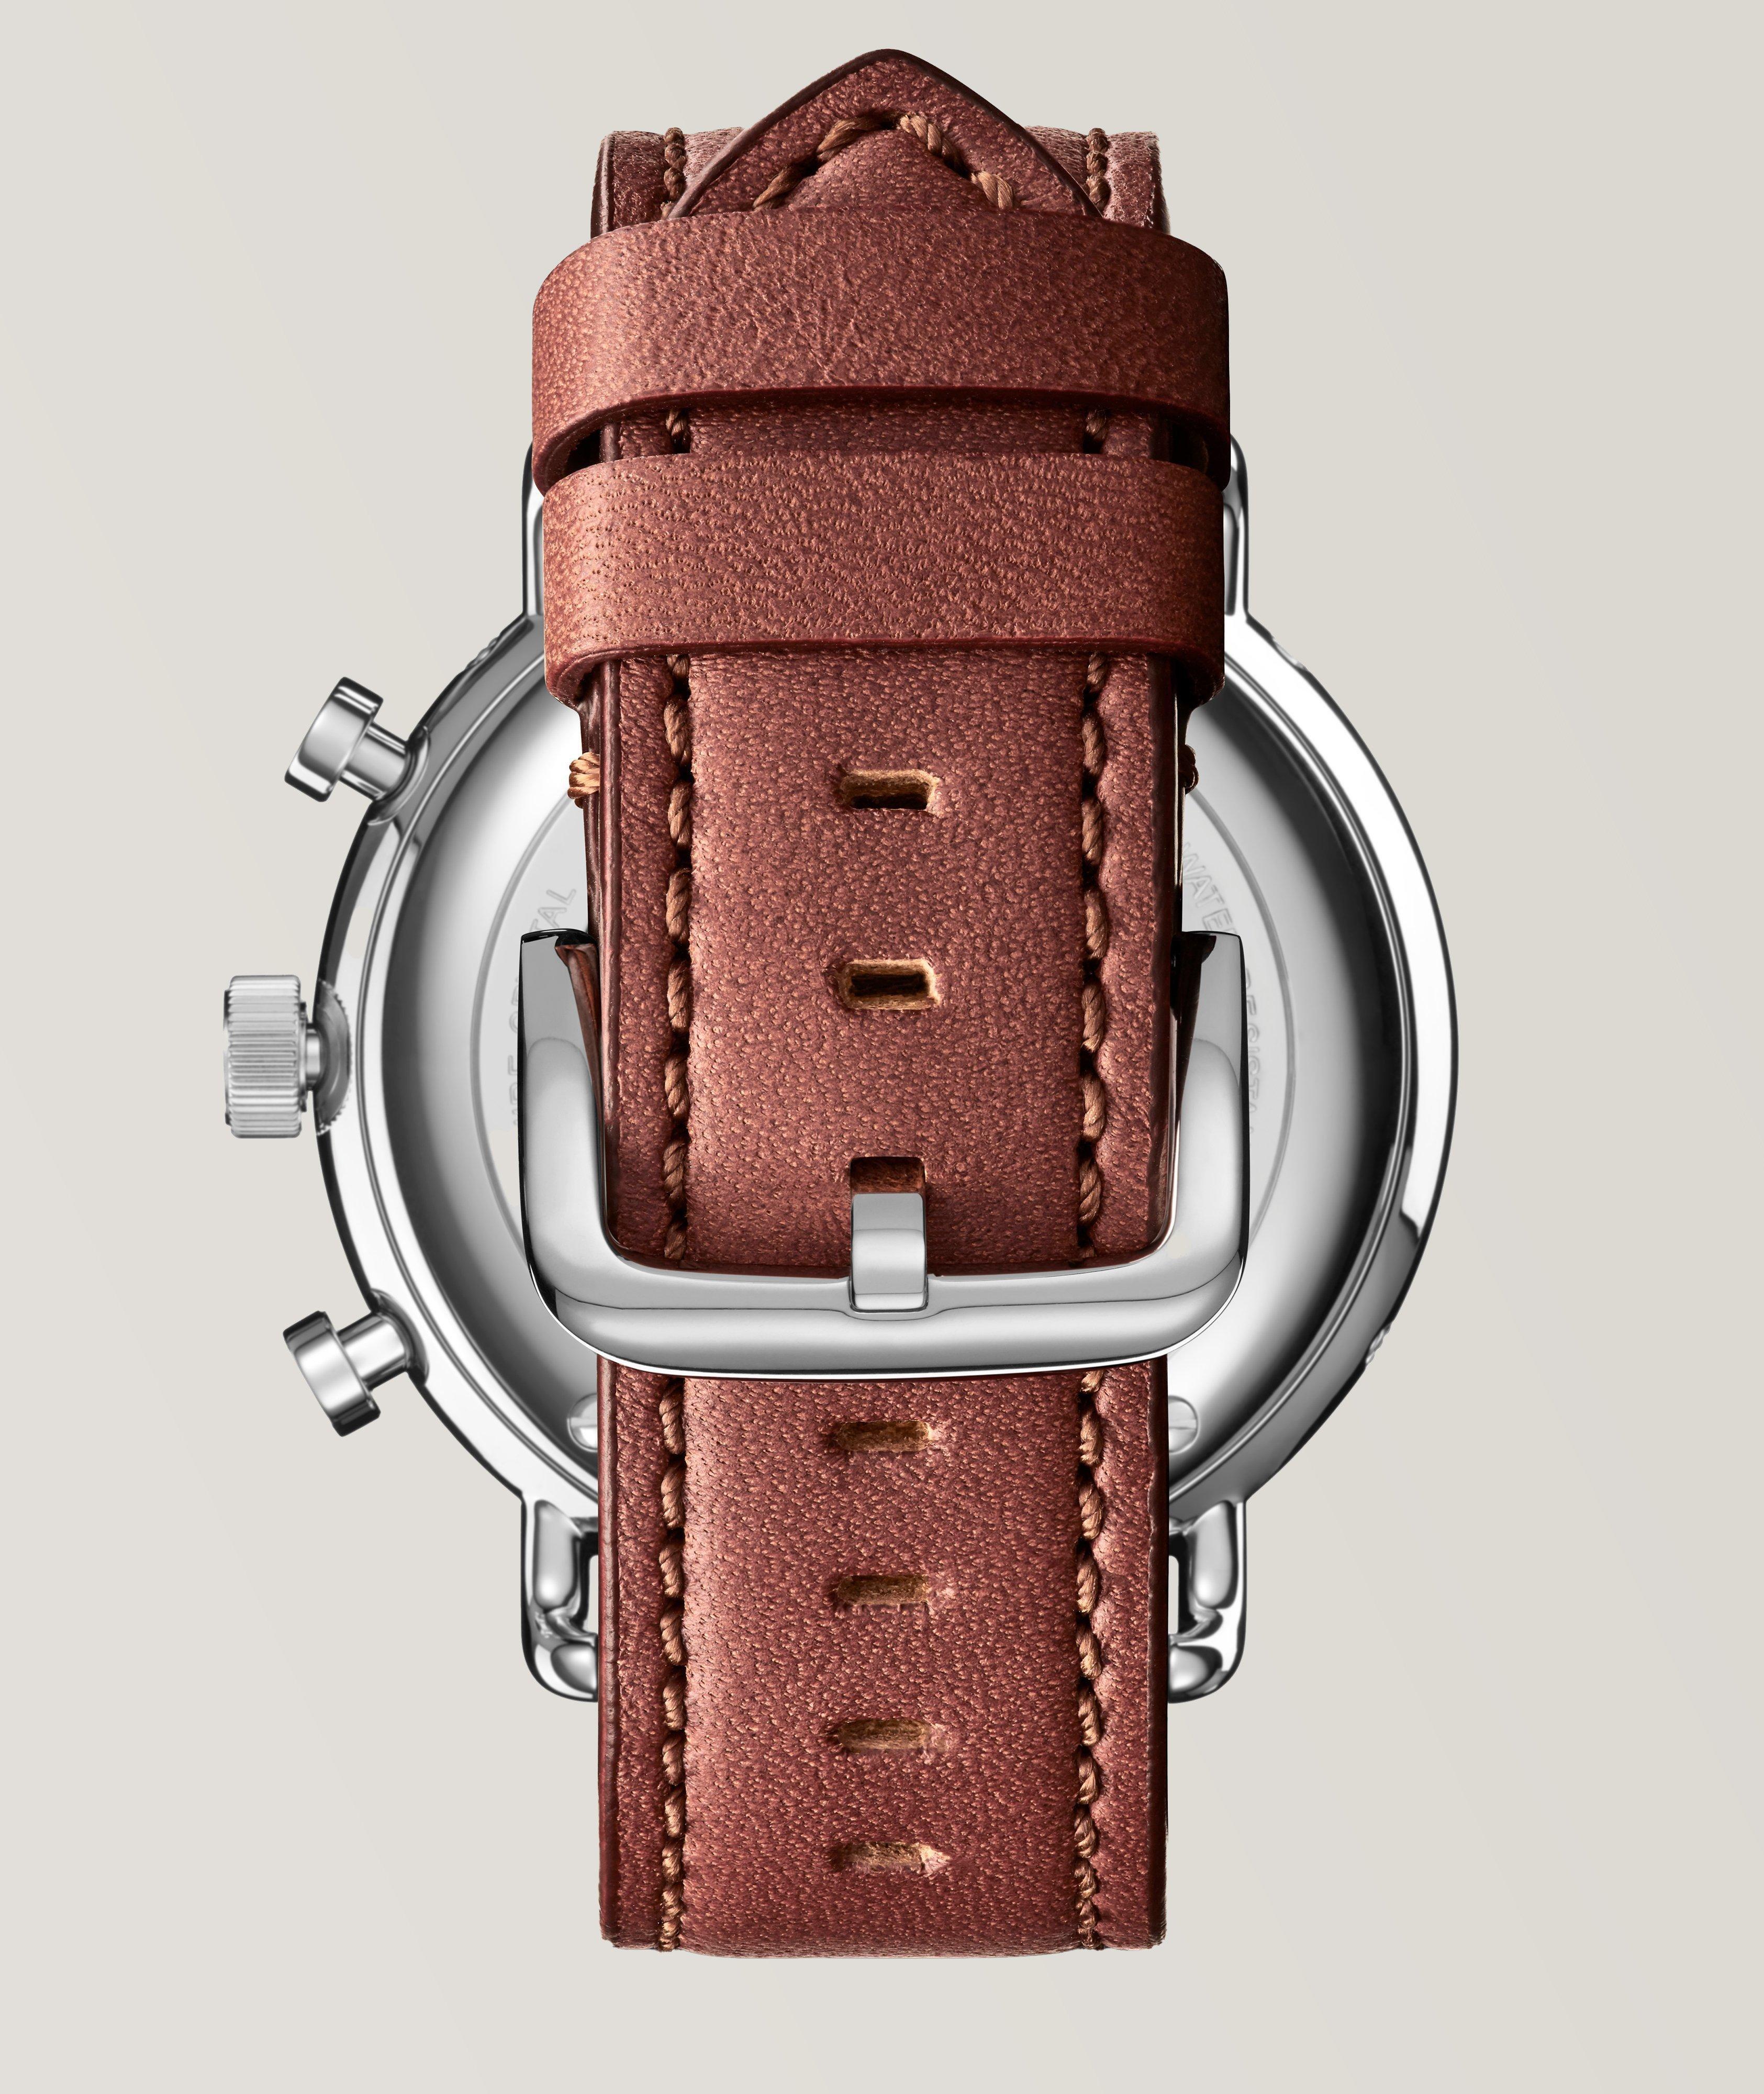 Montre sport Canfield avec bracelet en cuir image 2